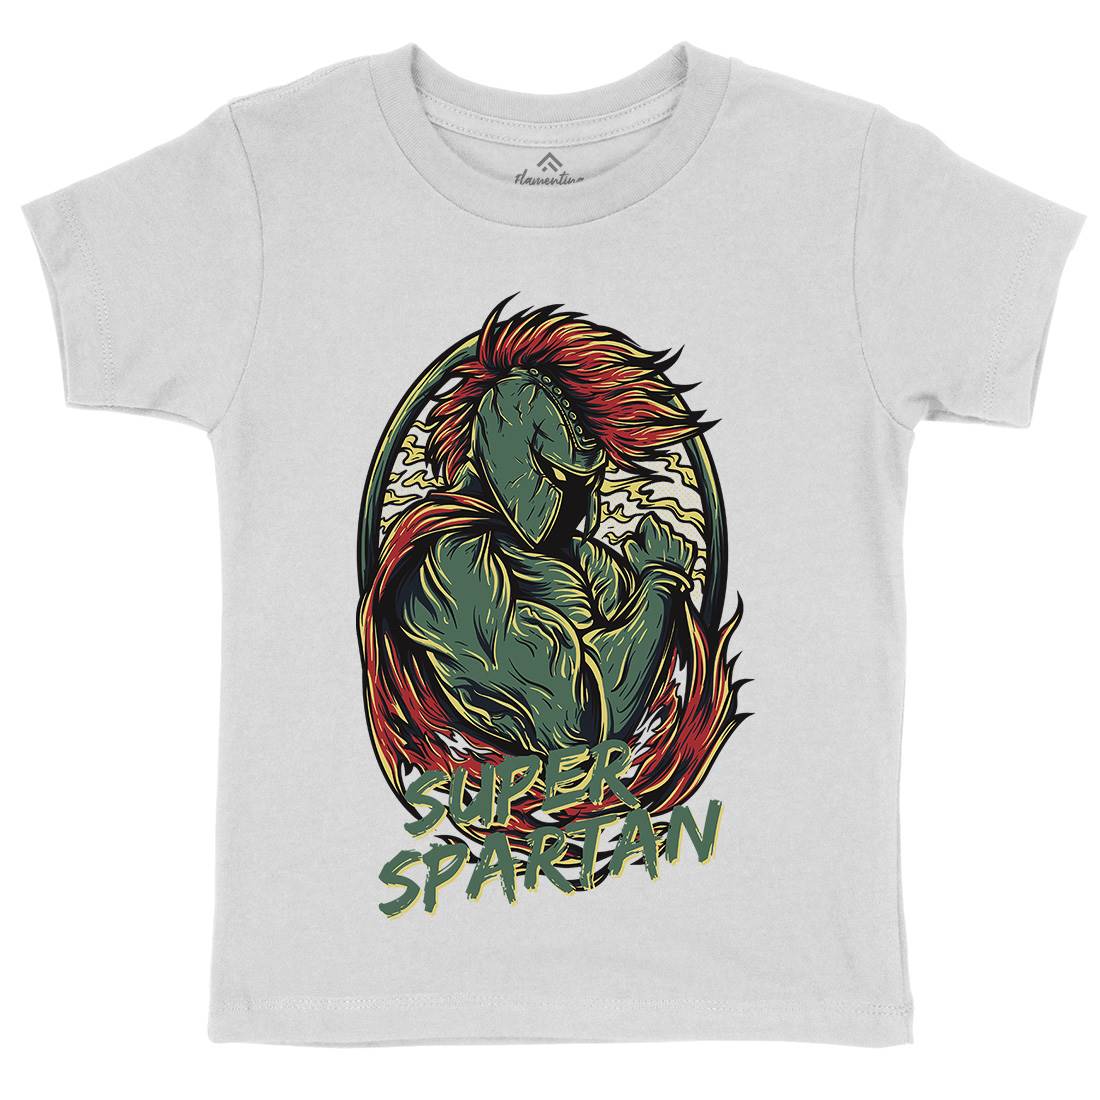 Super Spartan Kids Crew Neck T-Shirt Warriors D843